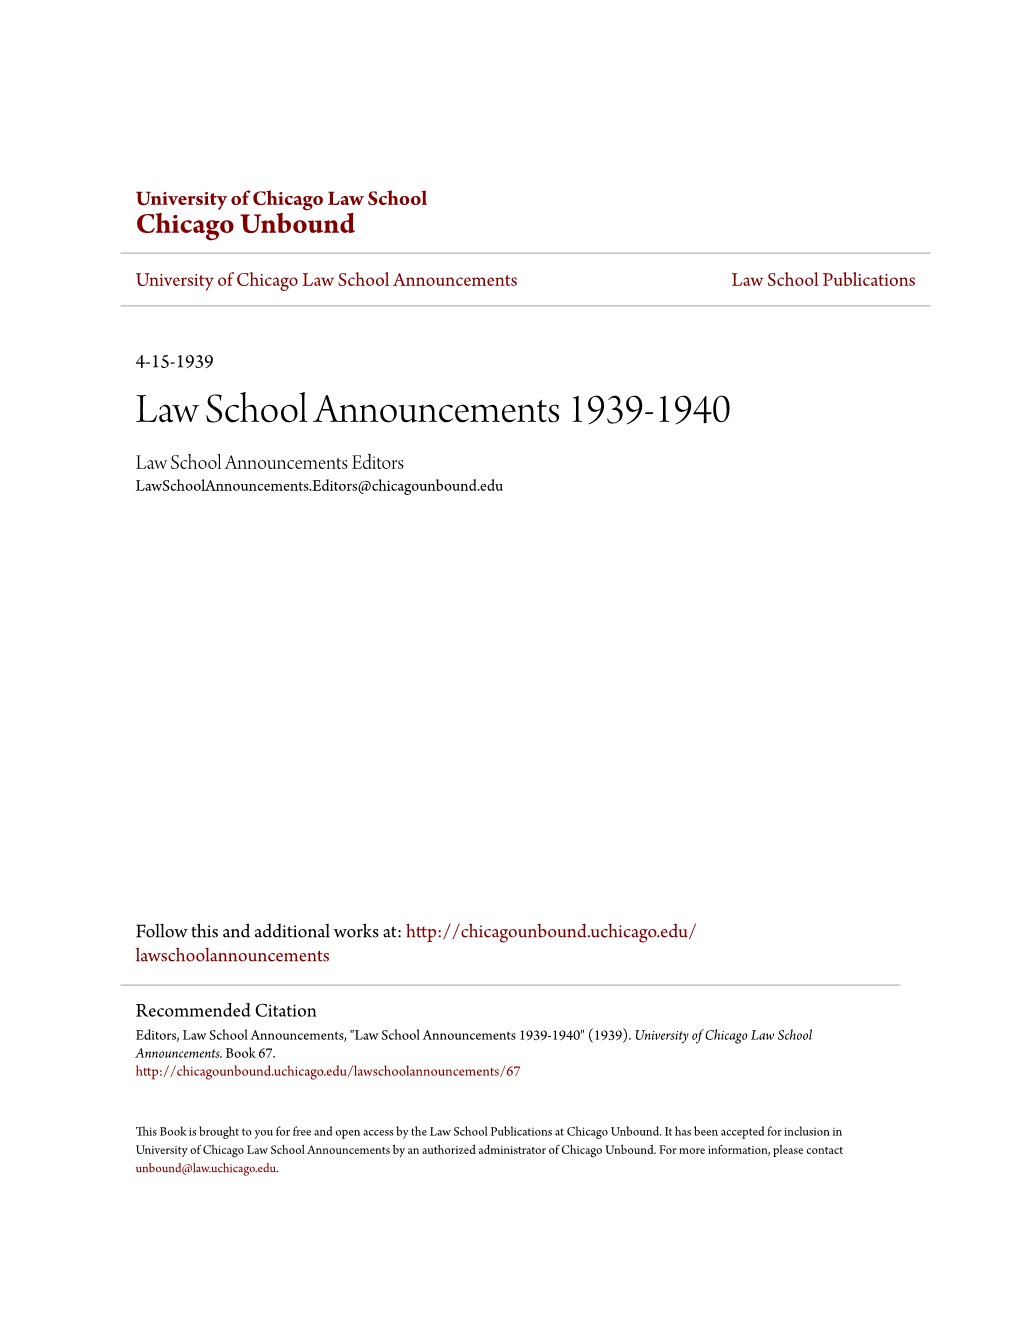 Law School Announcements 1939-1940 Law School Announcements Editors Lawschoolannouncements.Editors@Chicagounbound.Edu